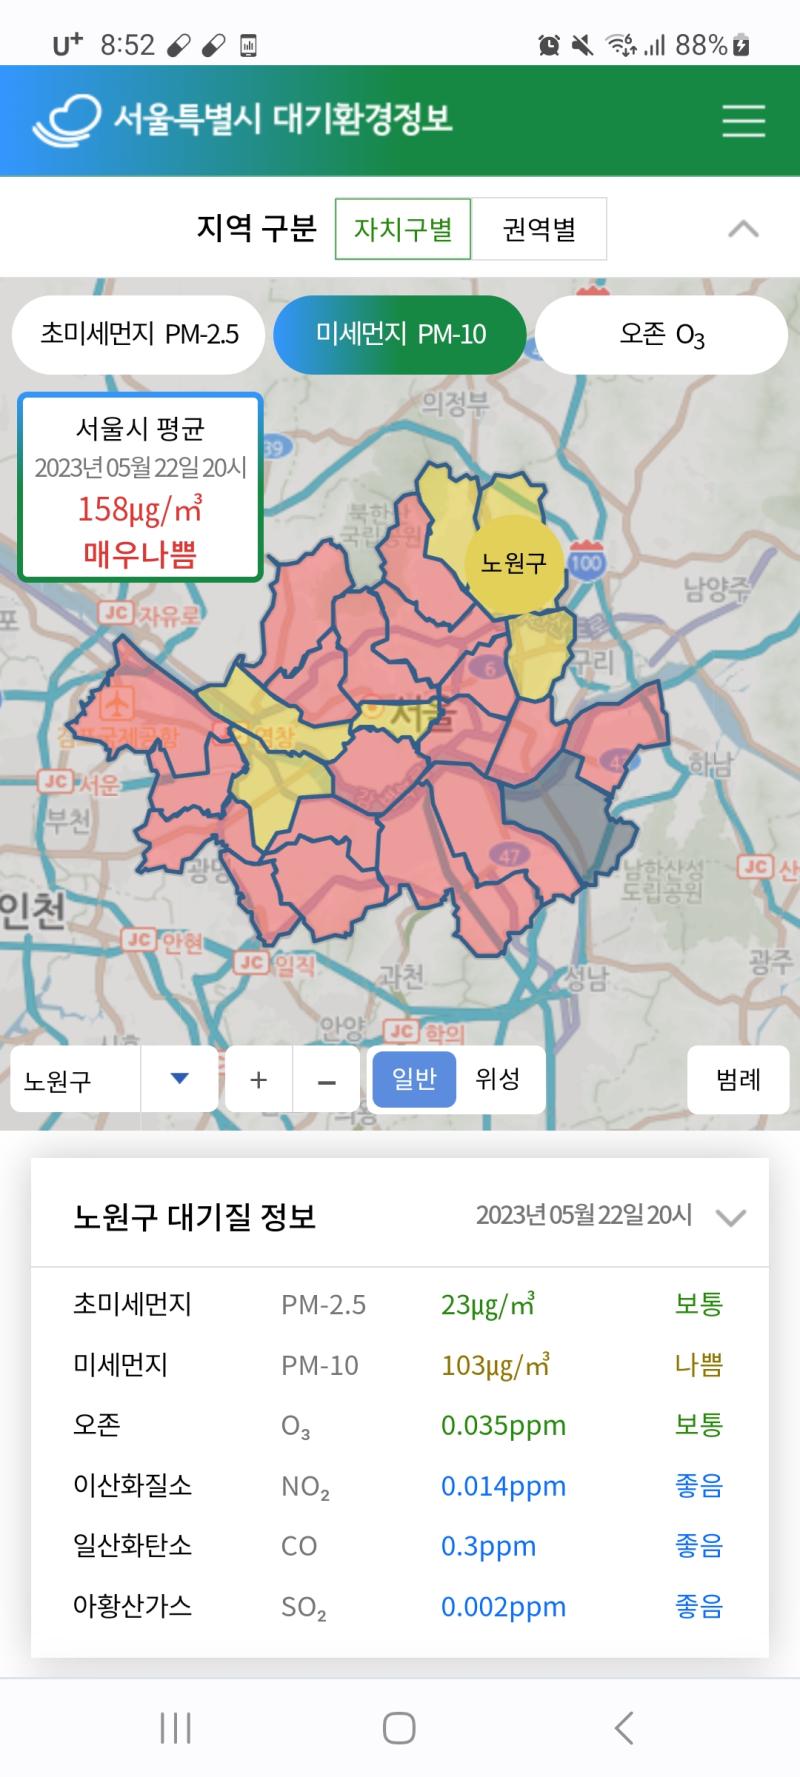 서울시 평균 매우 나쁨이야